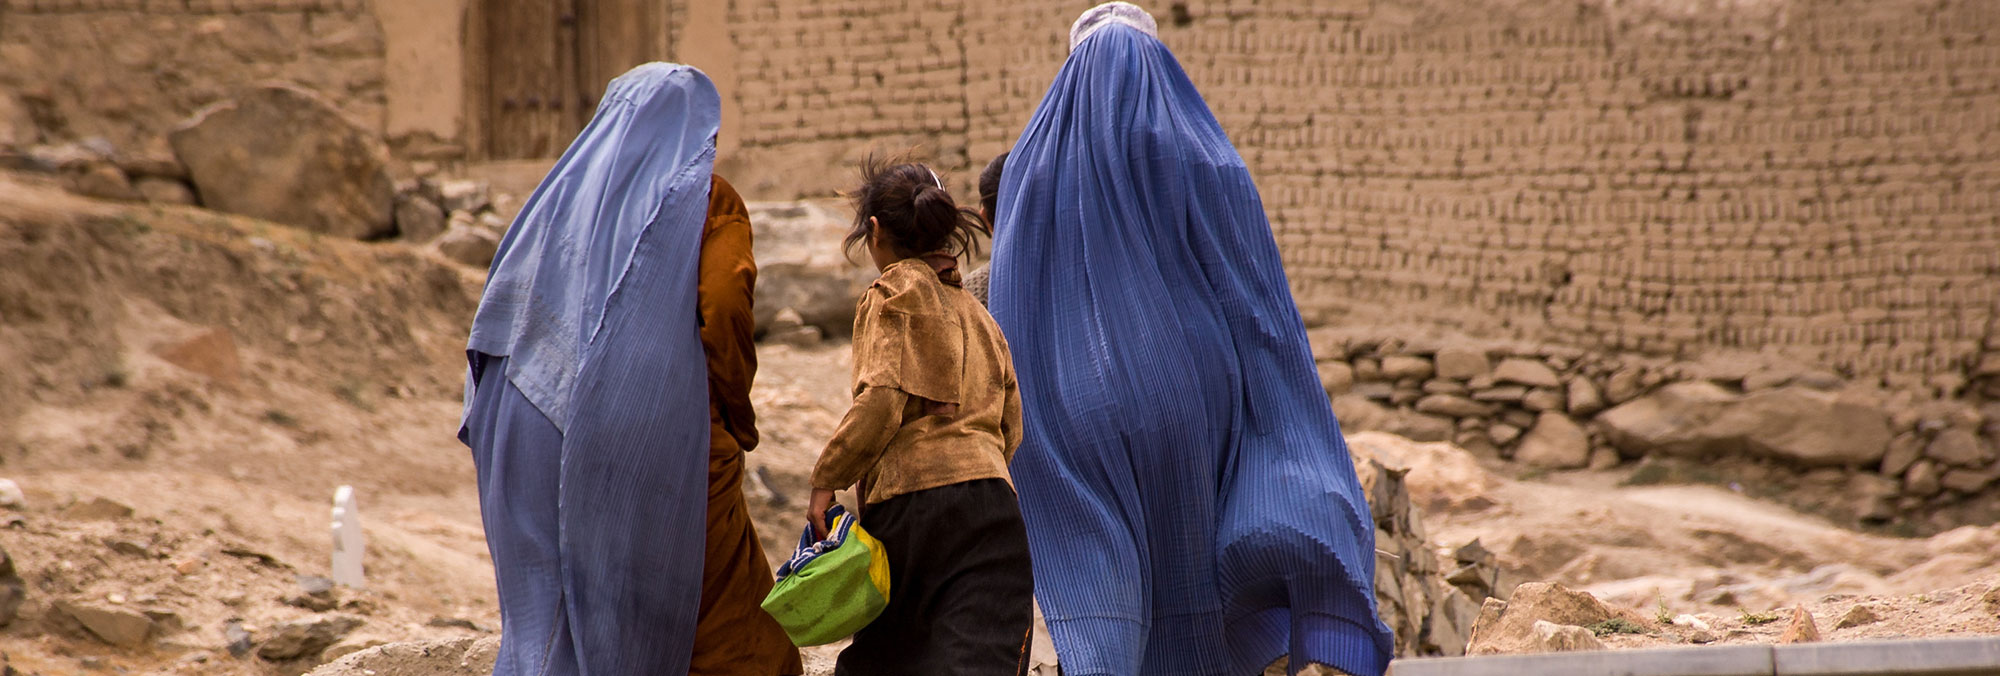 Con le donne afghane, contro ogni violenza nel mondo